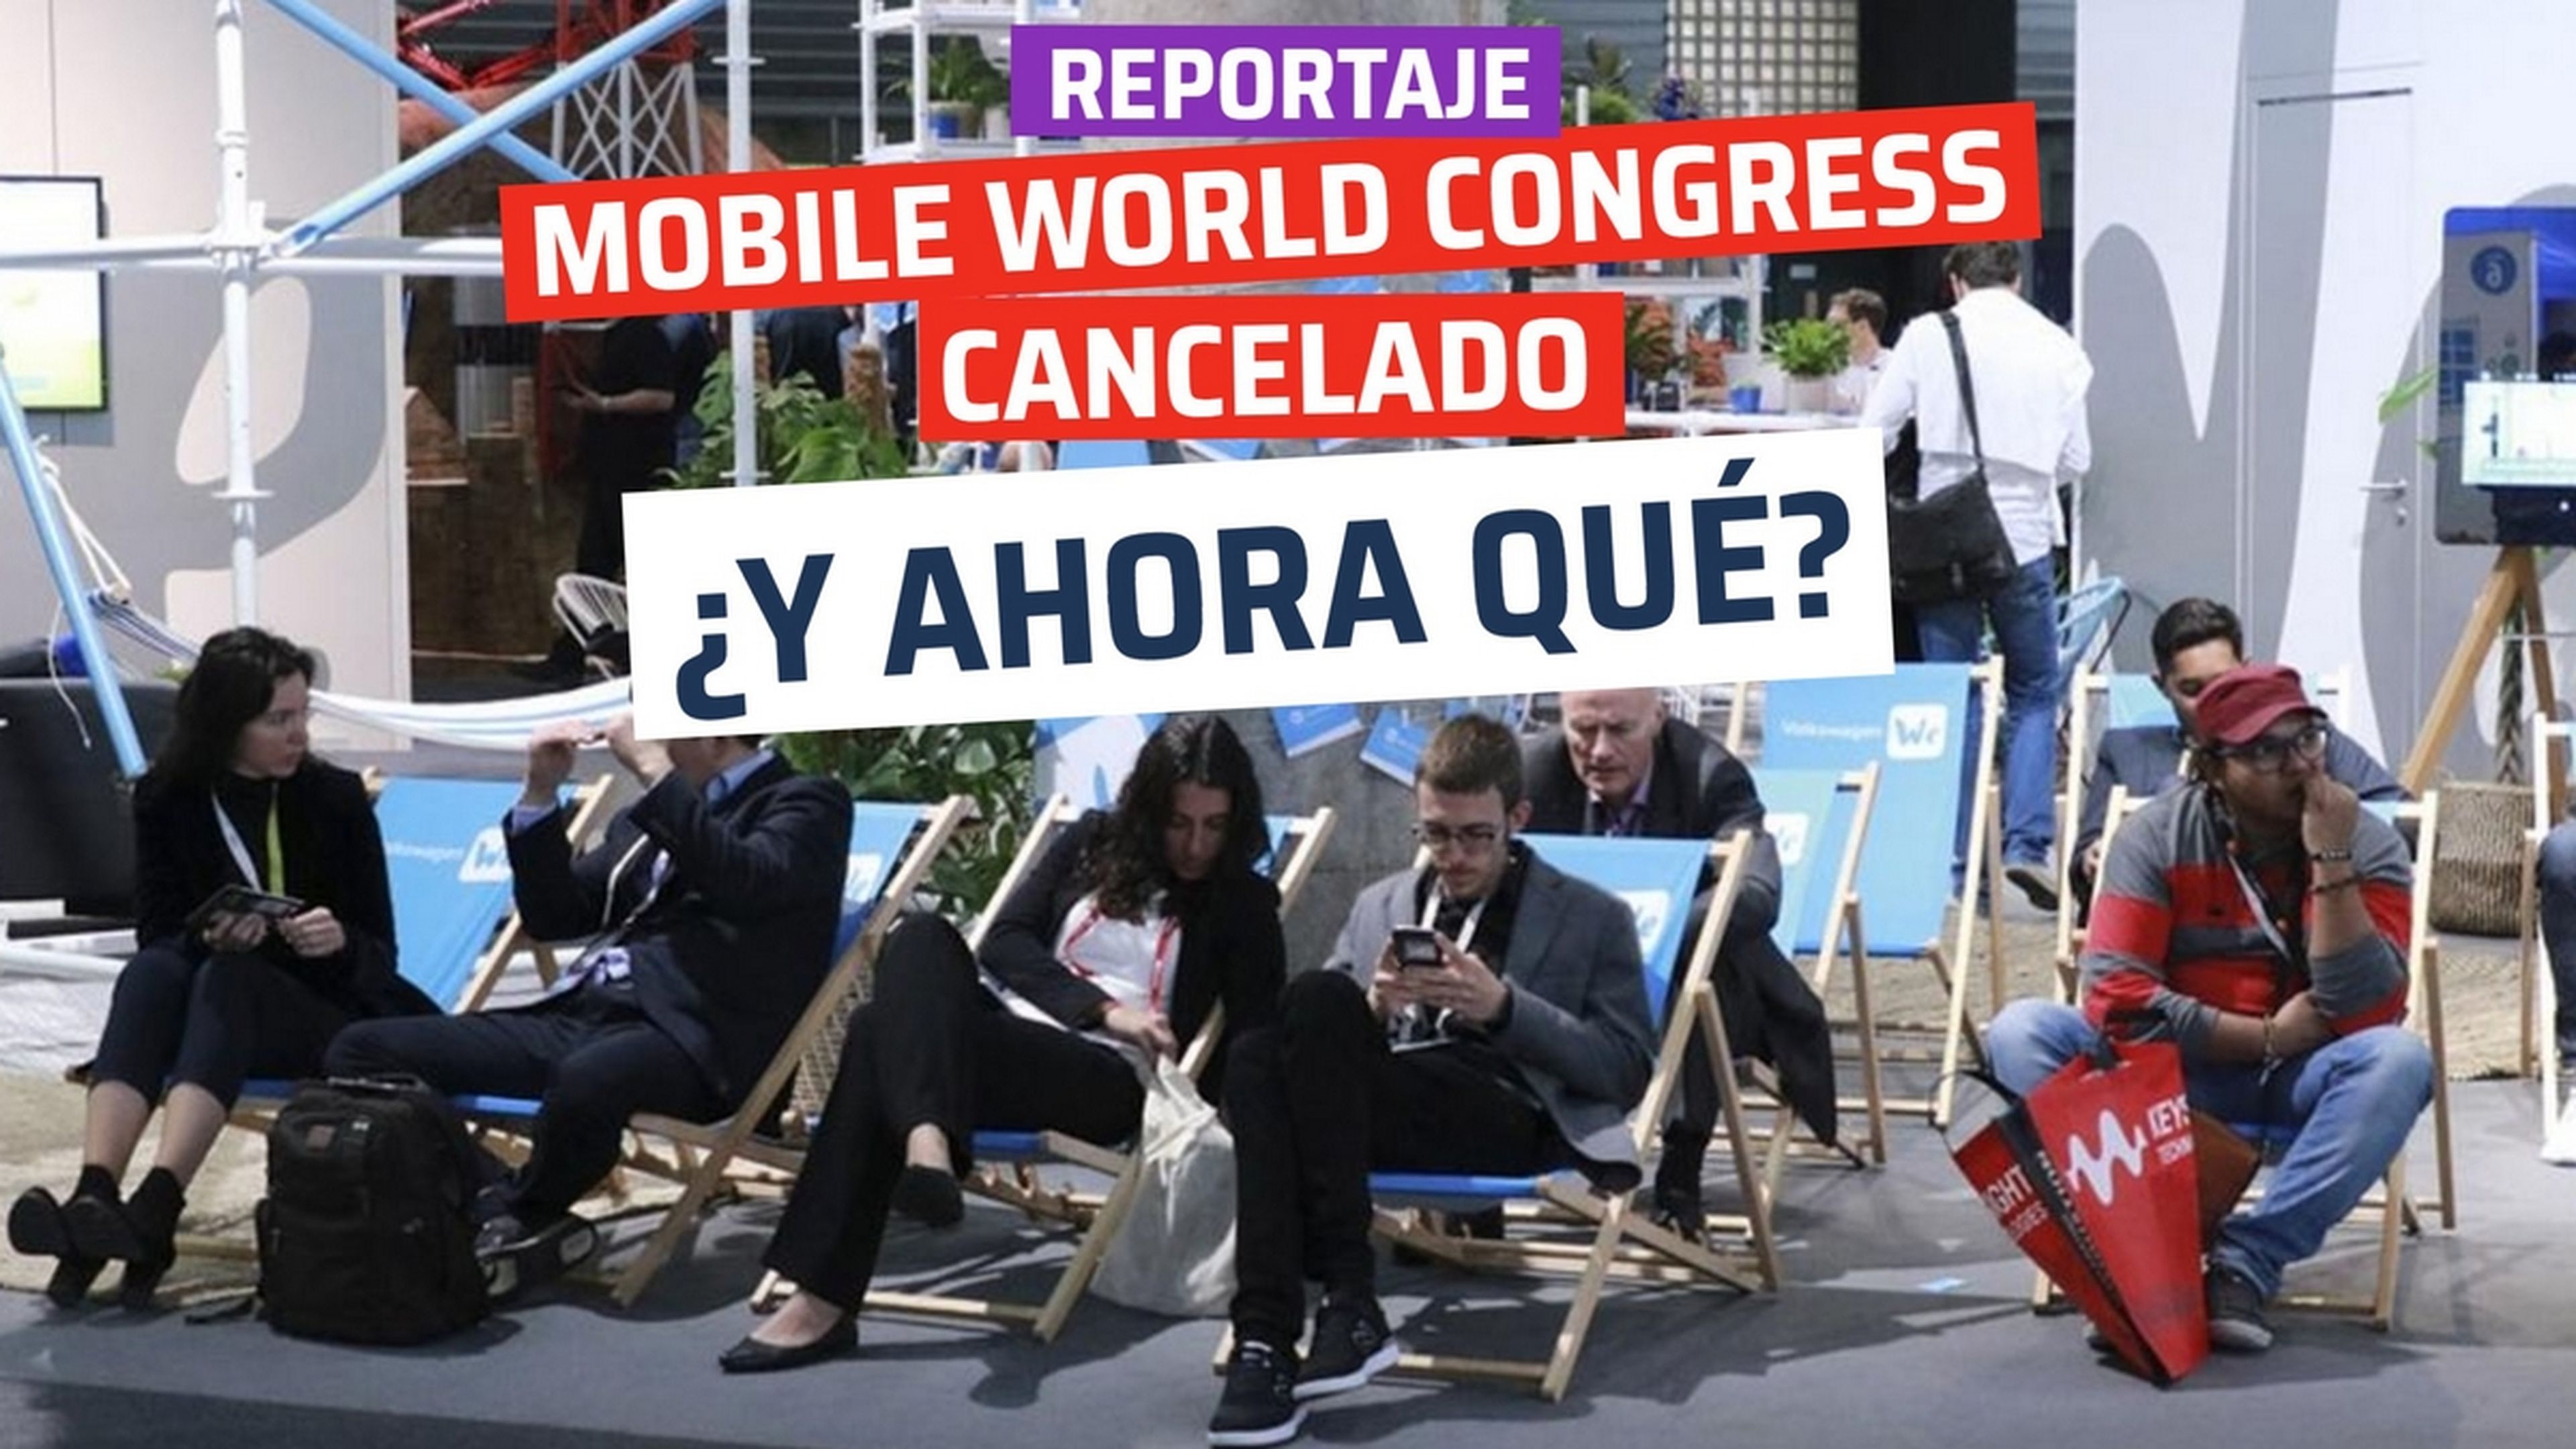 Mobile World Congress cancelado, ¿y ahora qué?